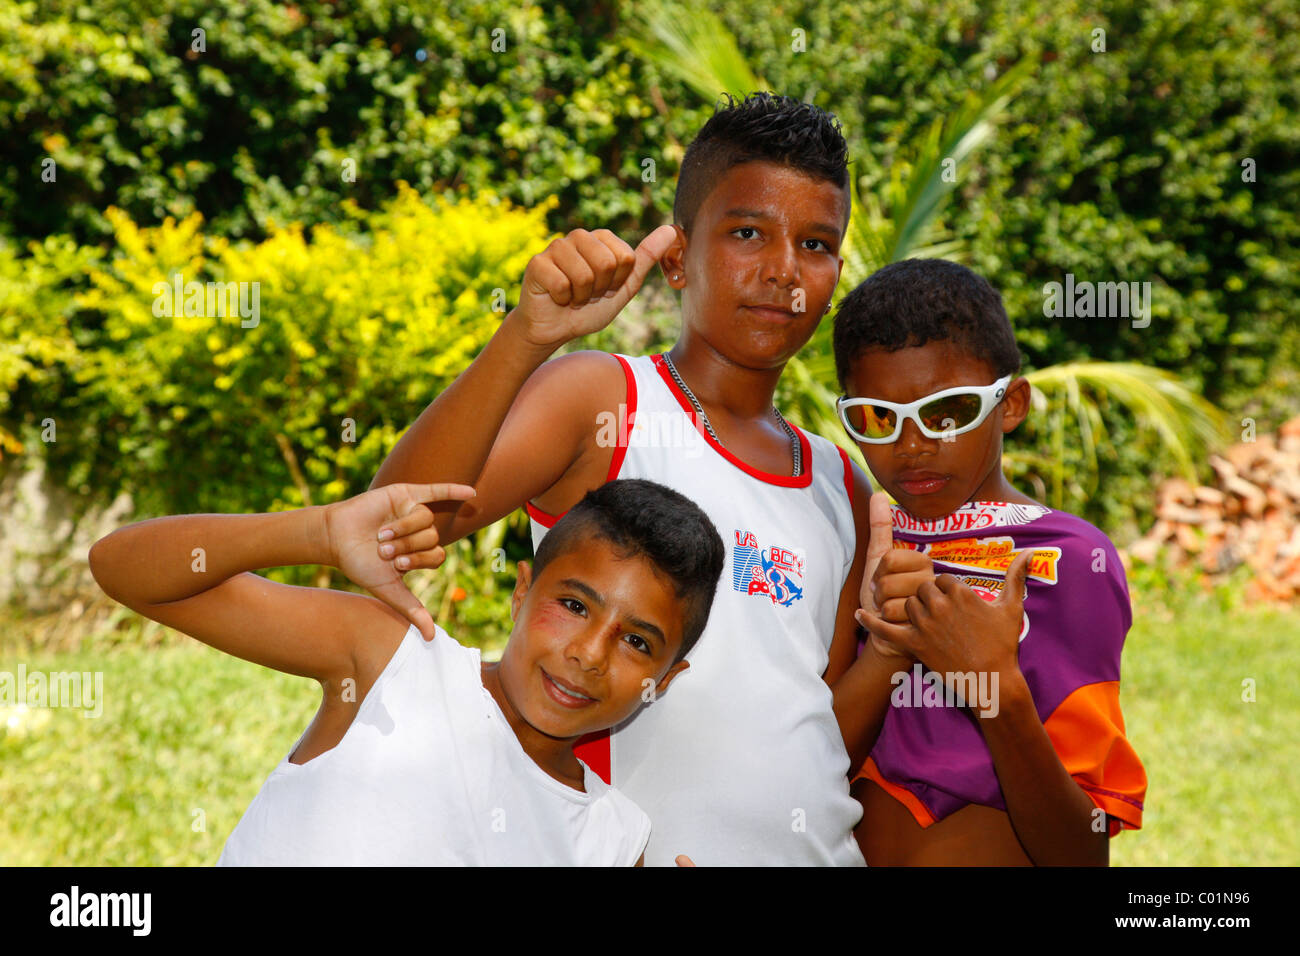 Los chicos posando con poses machistas, Fortaleza, Ceará, Brasil, América del Sur Foto de stock